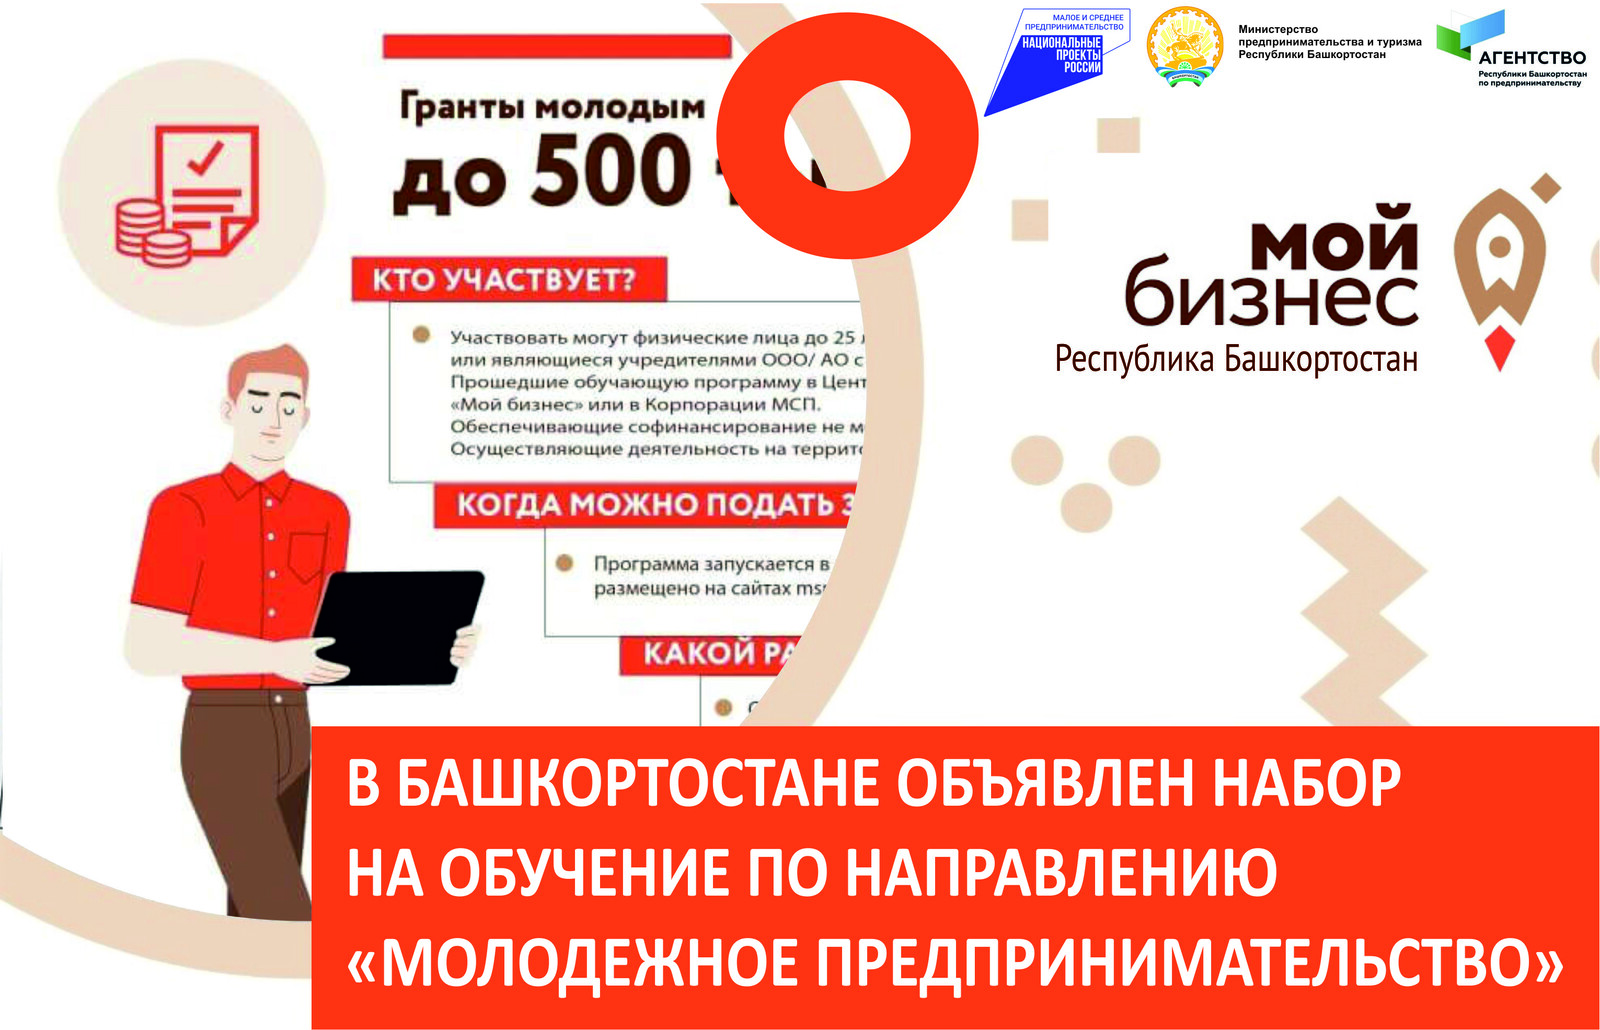 В Башкортостане объявлен набор на обучение по направлению «Молодежное предпринимательство»